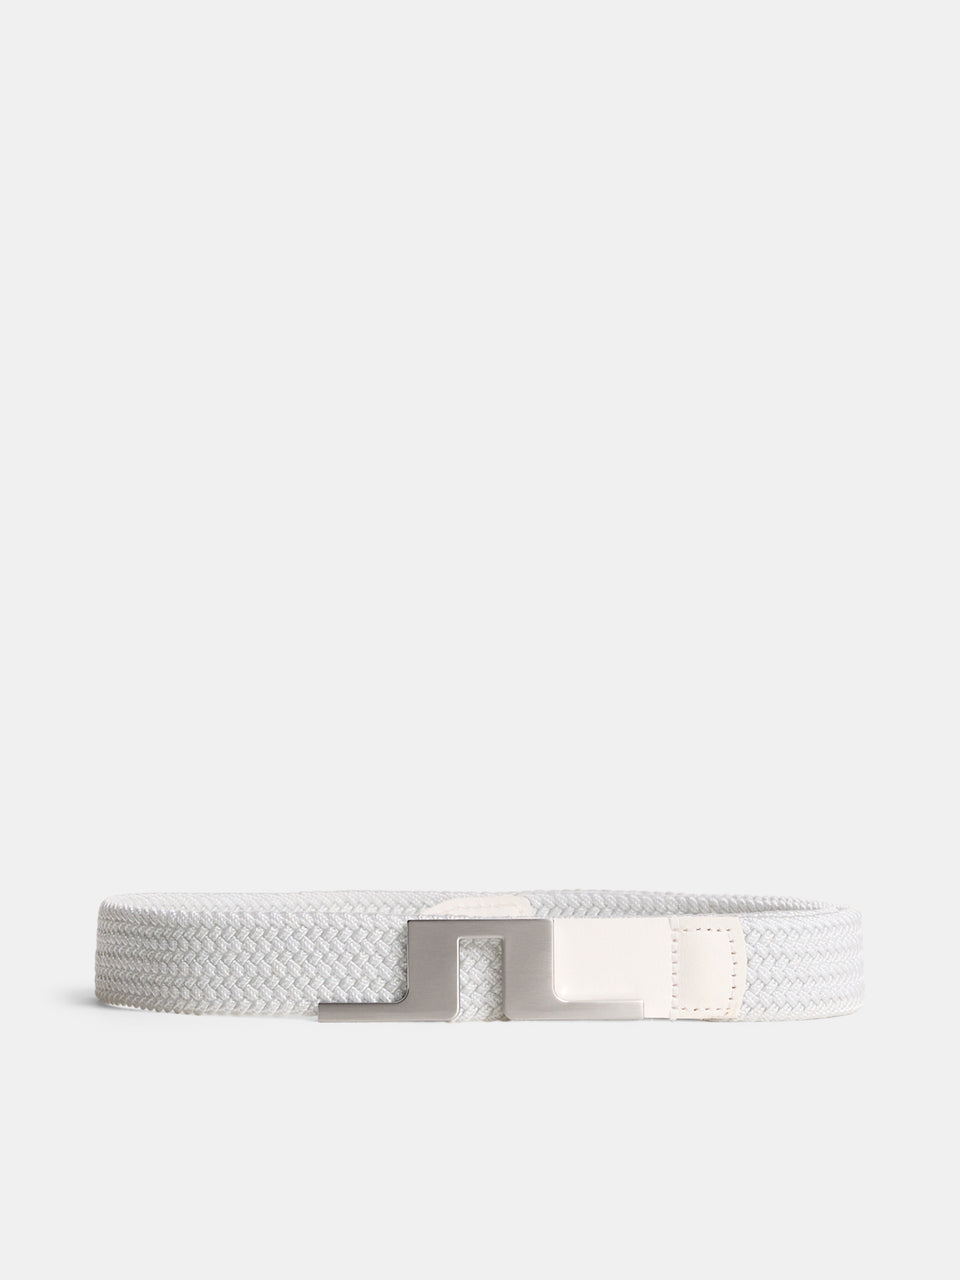 The Lykke Belt / White